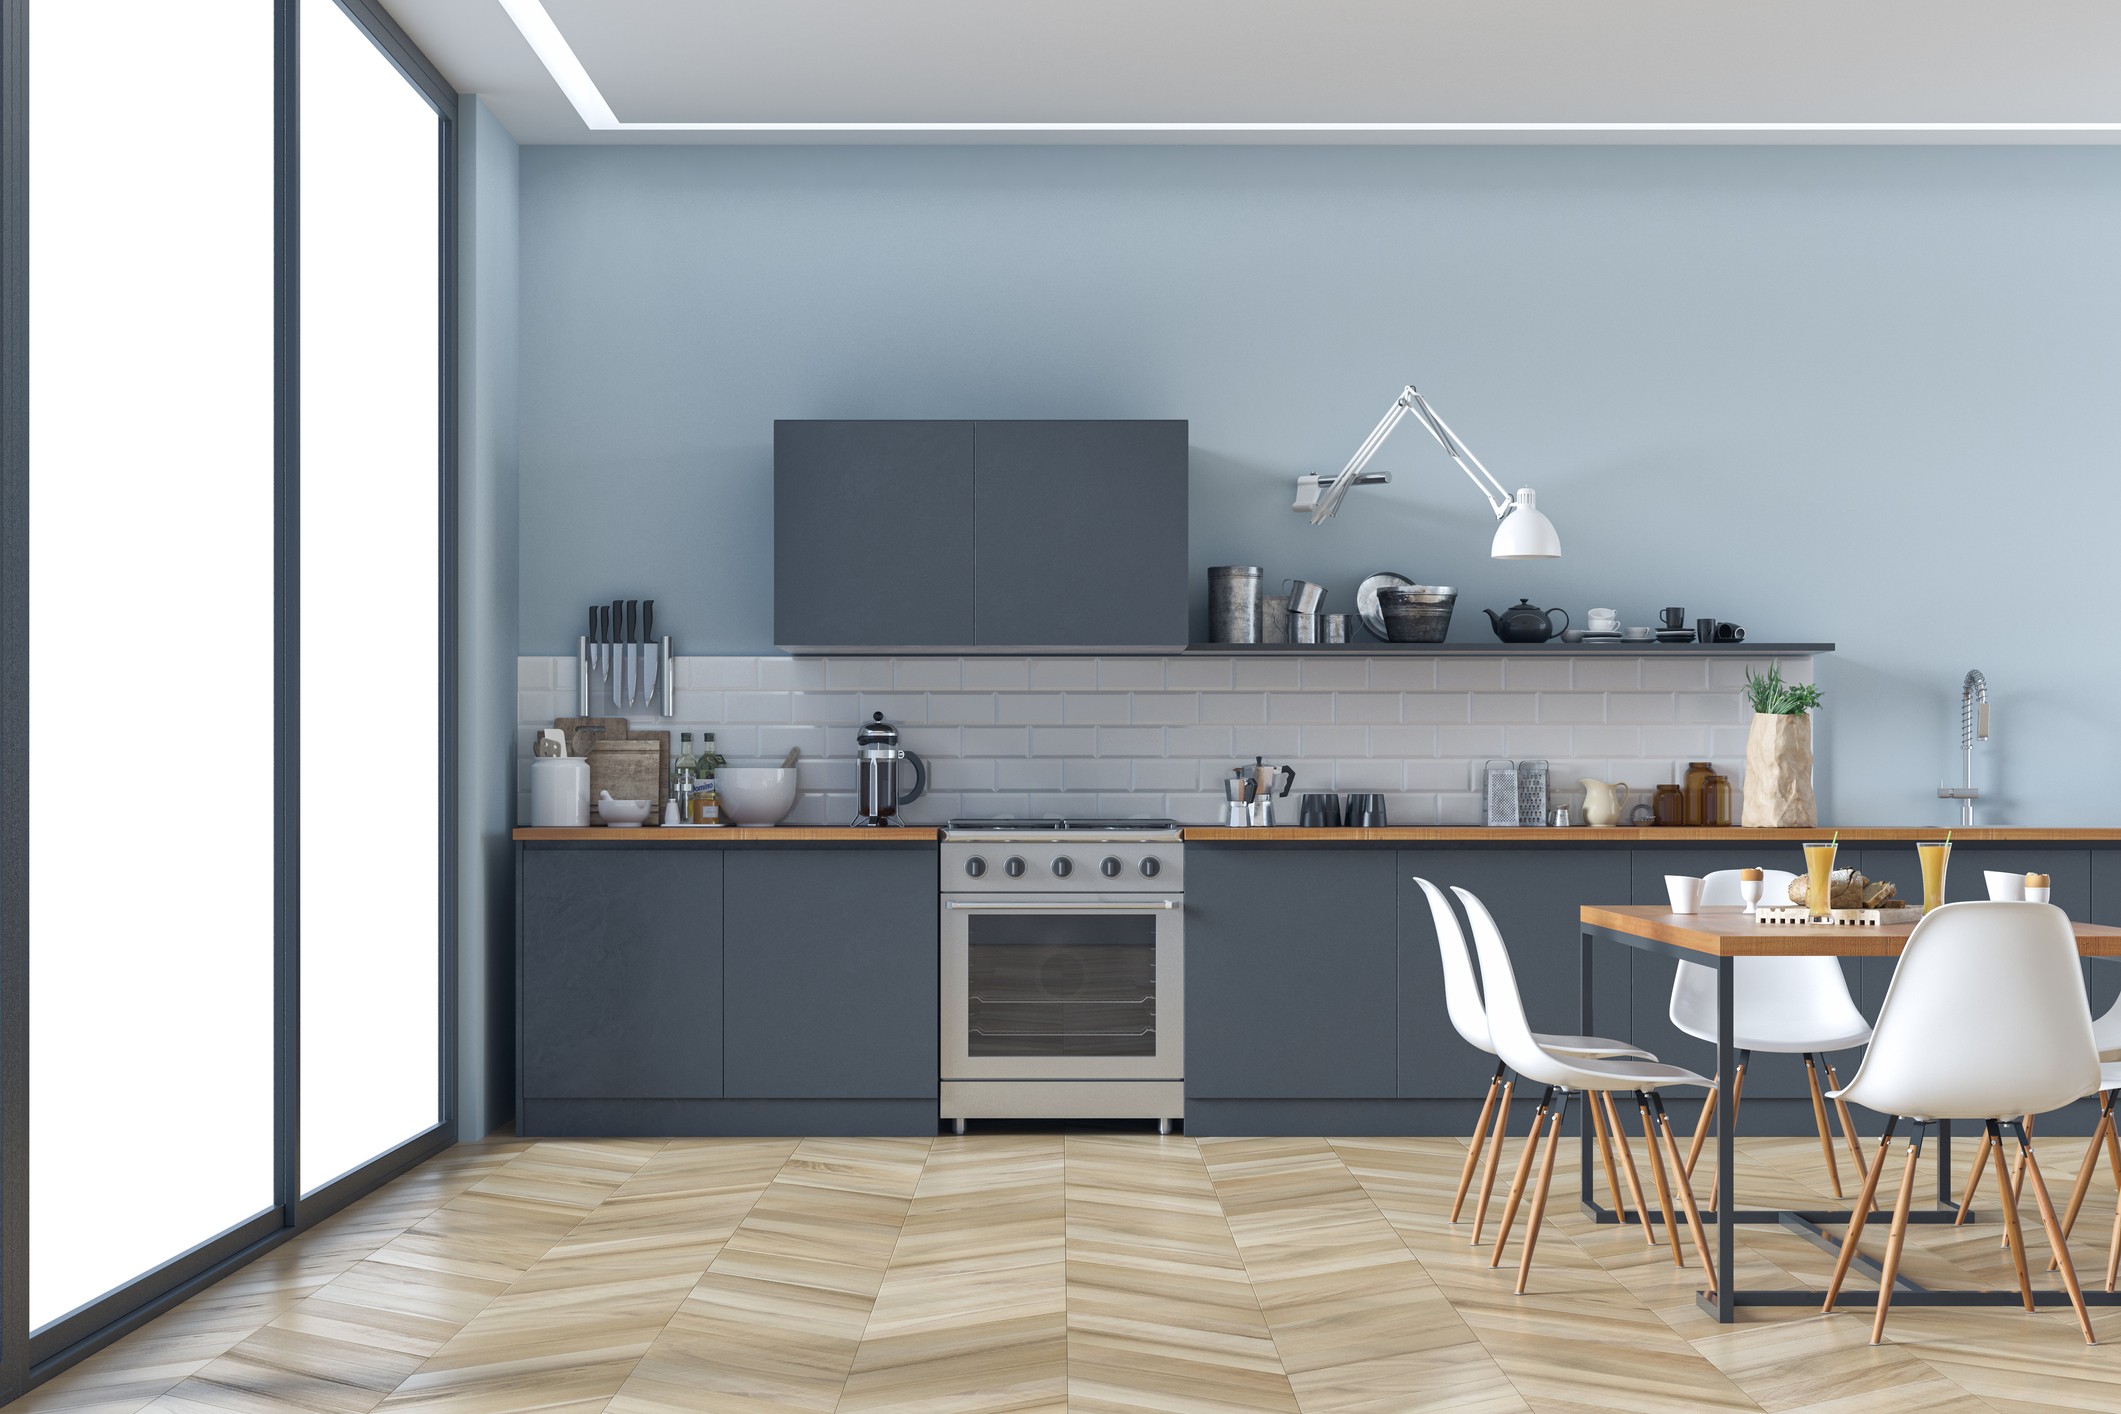 Fogão colorido é uma ótima opção para quem deseja mudar a atmosfera da cozinha. (Foto: Getty Images)